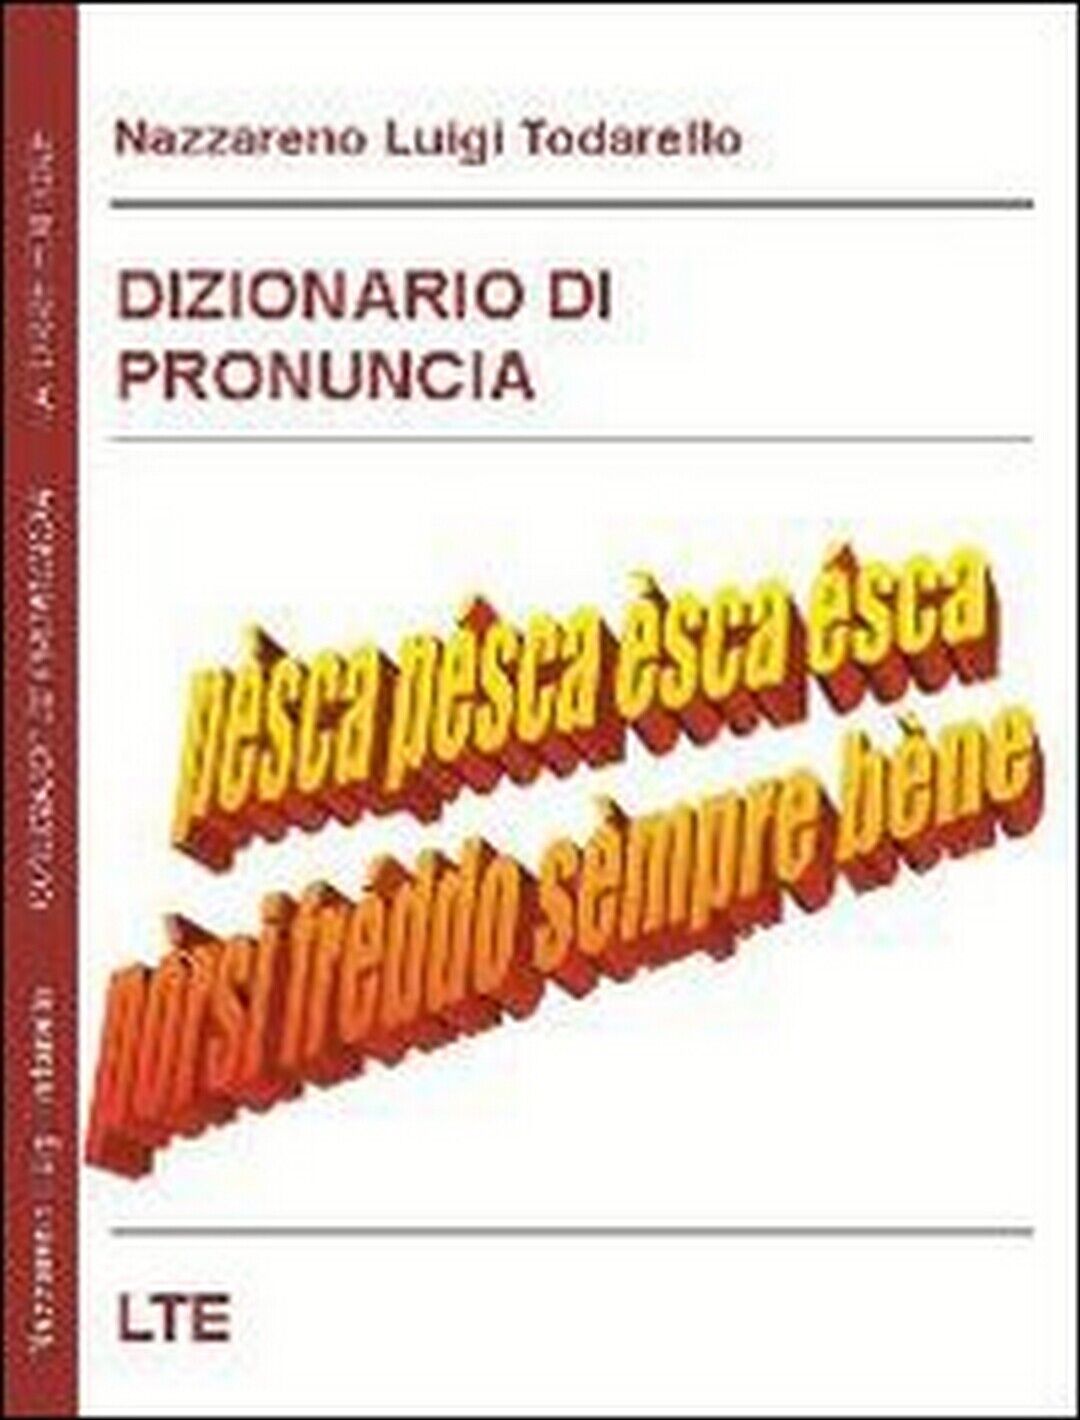 Dizionario di pronuncia  - di Nazzareno Luigi Todarello,  2009,  Latorre